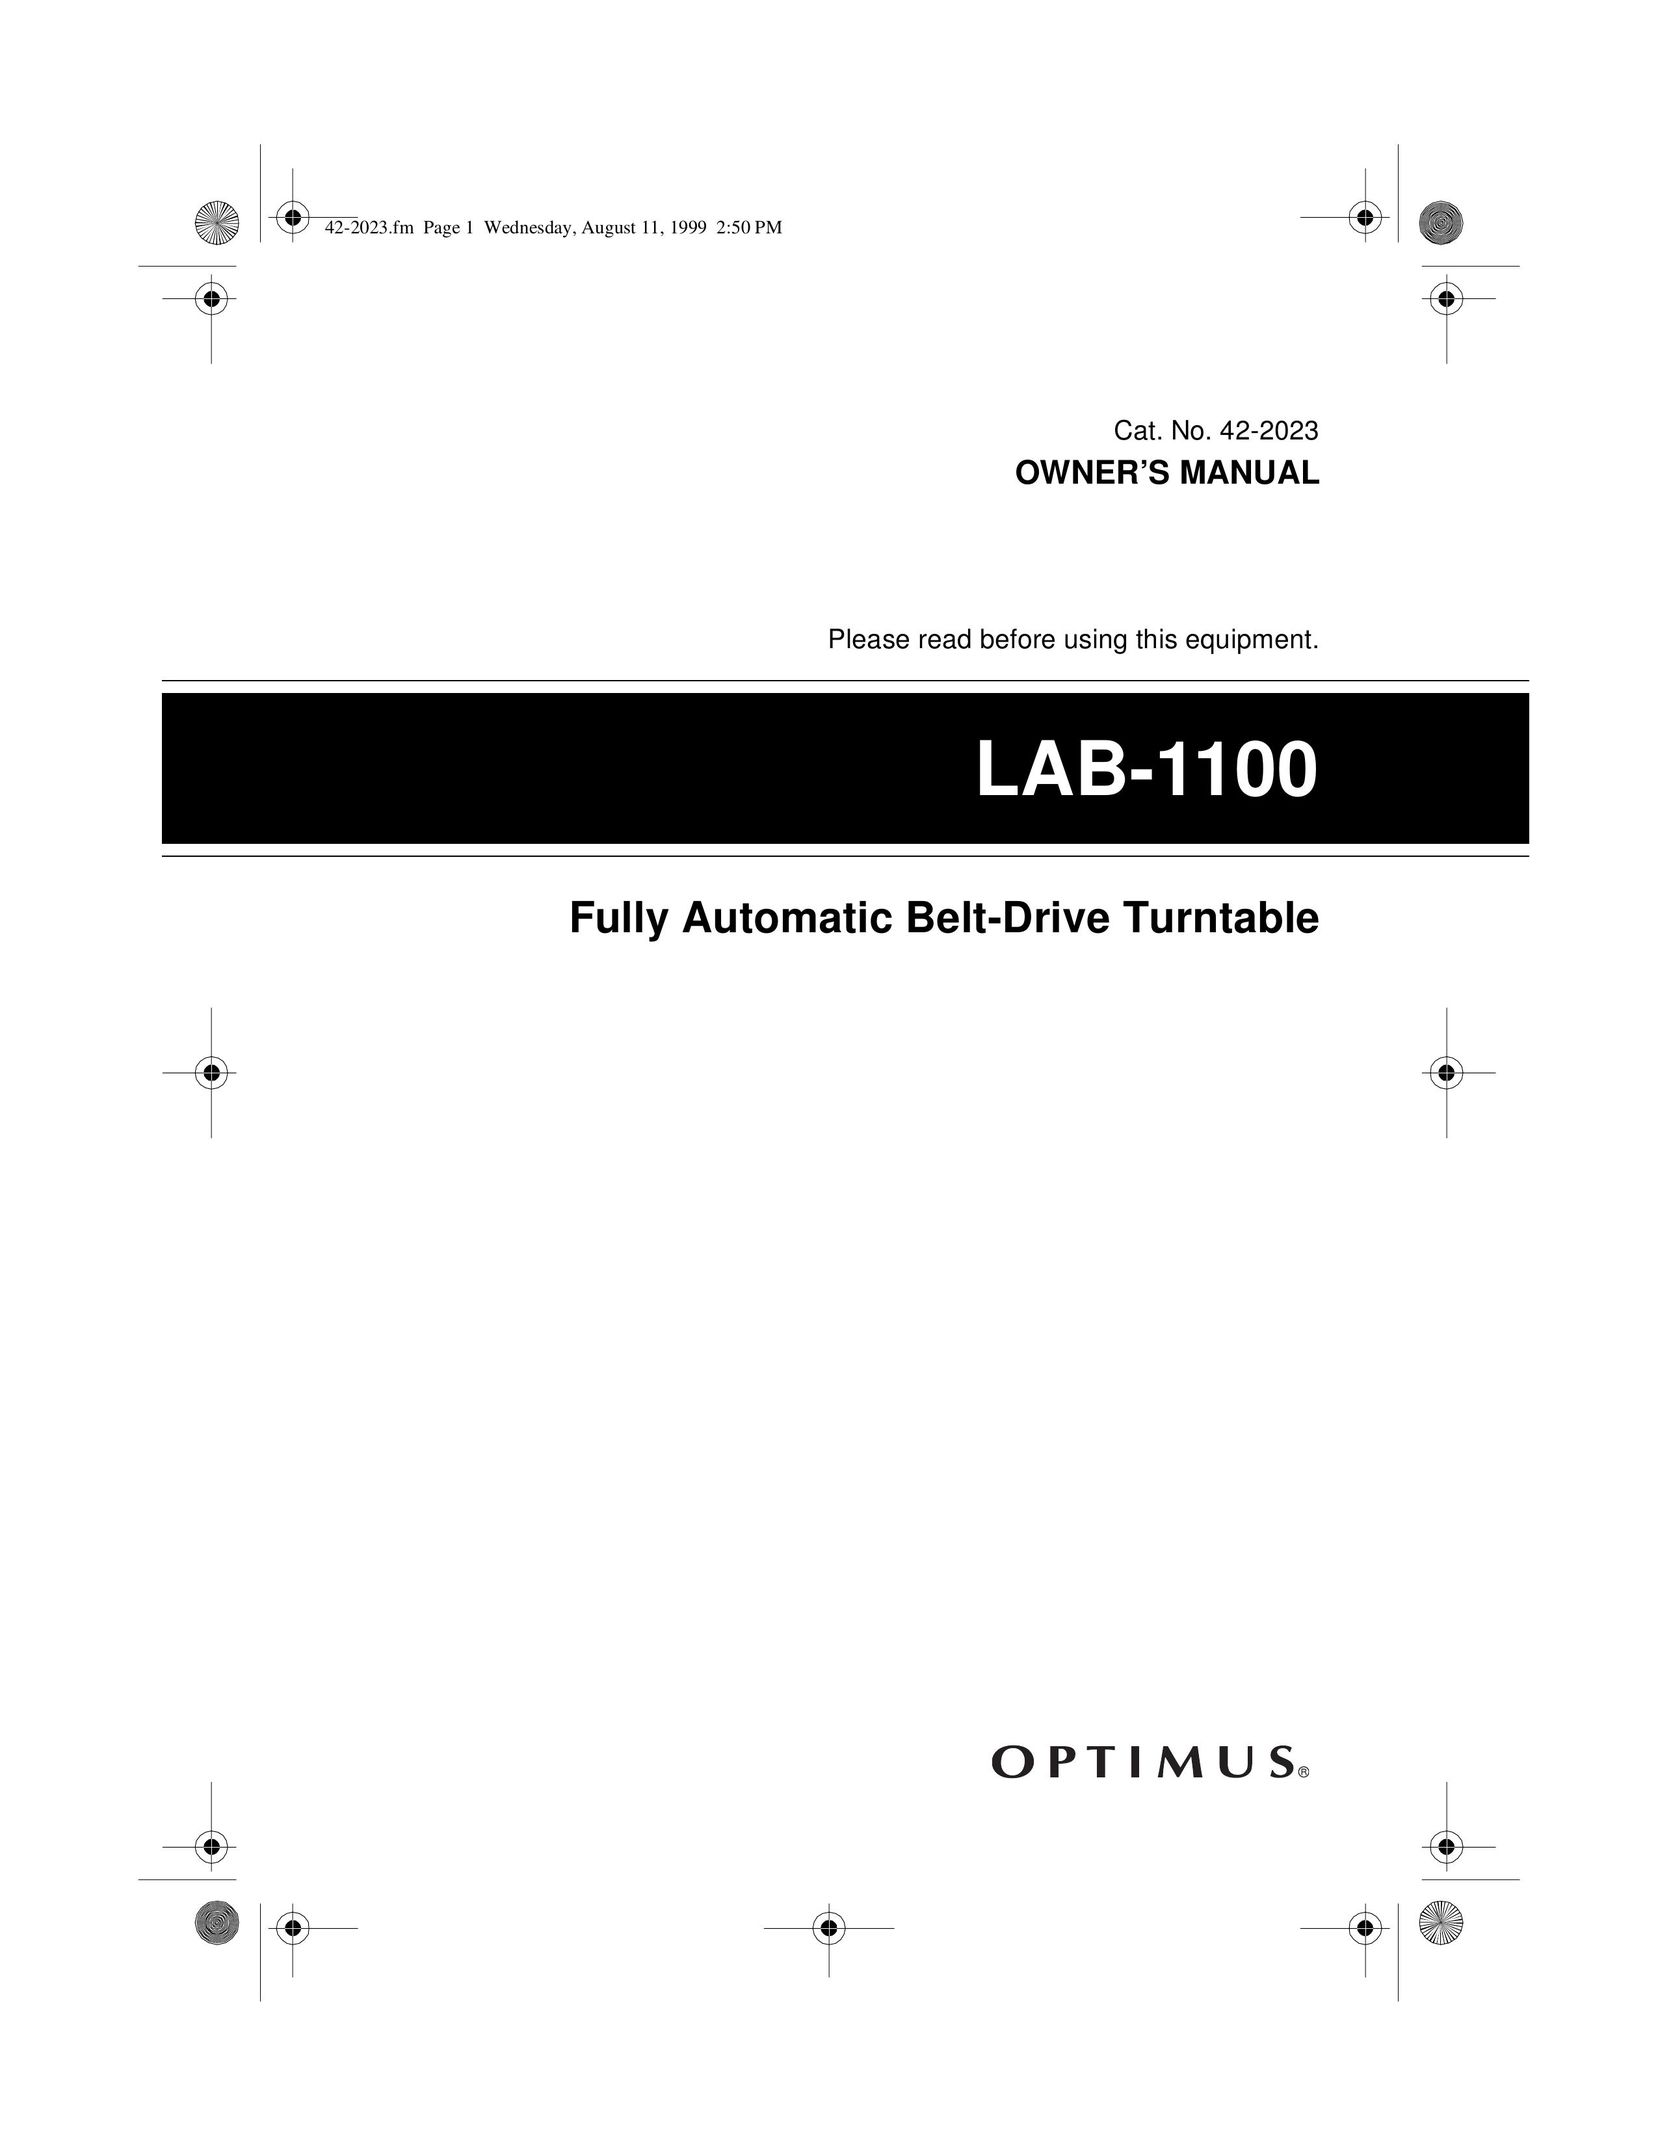 Optimus LAB-1100 Turntable User Manual